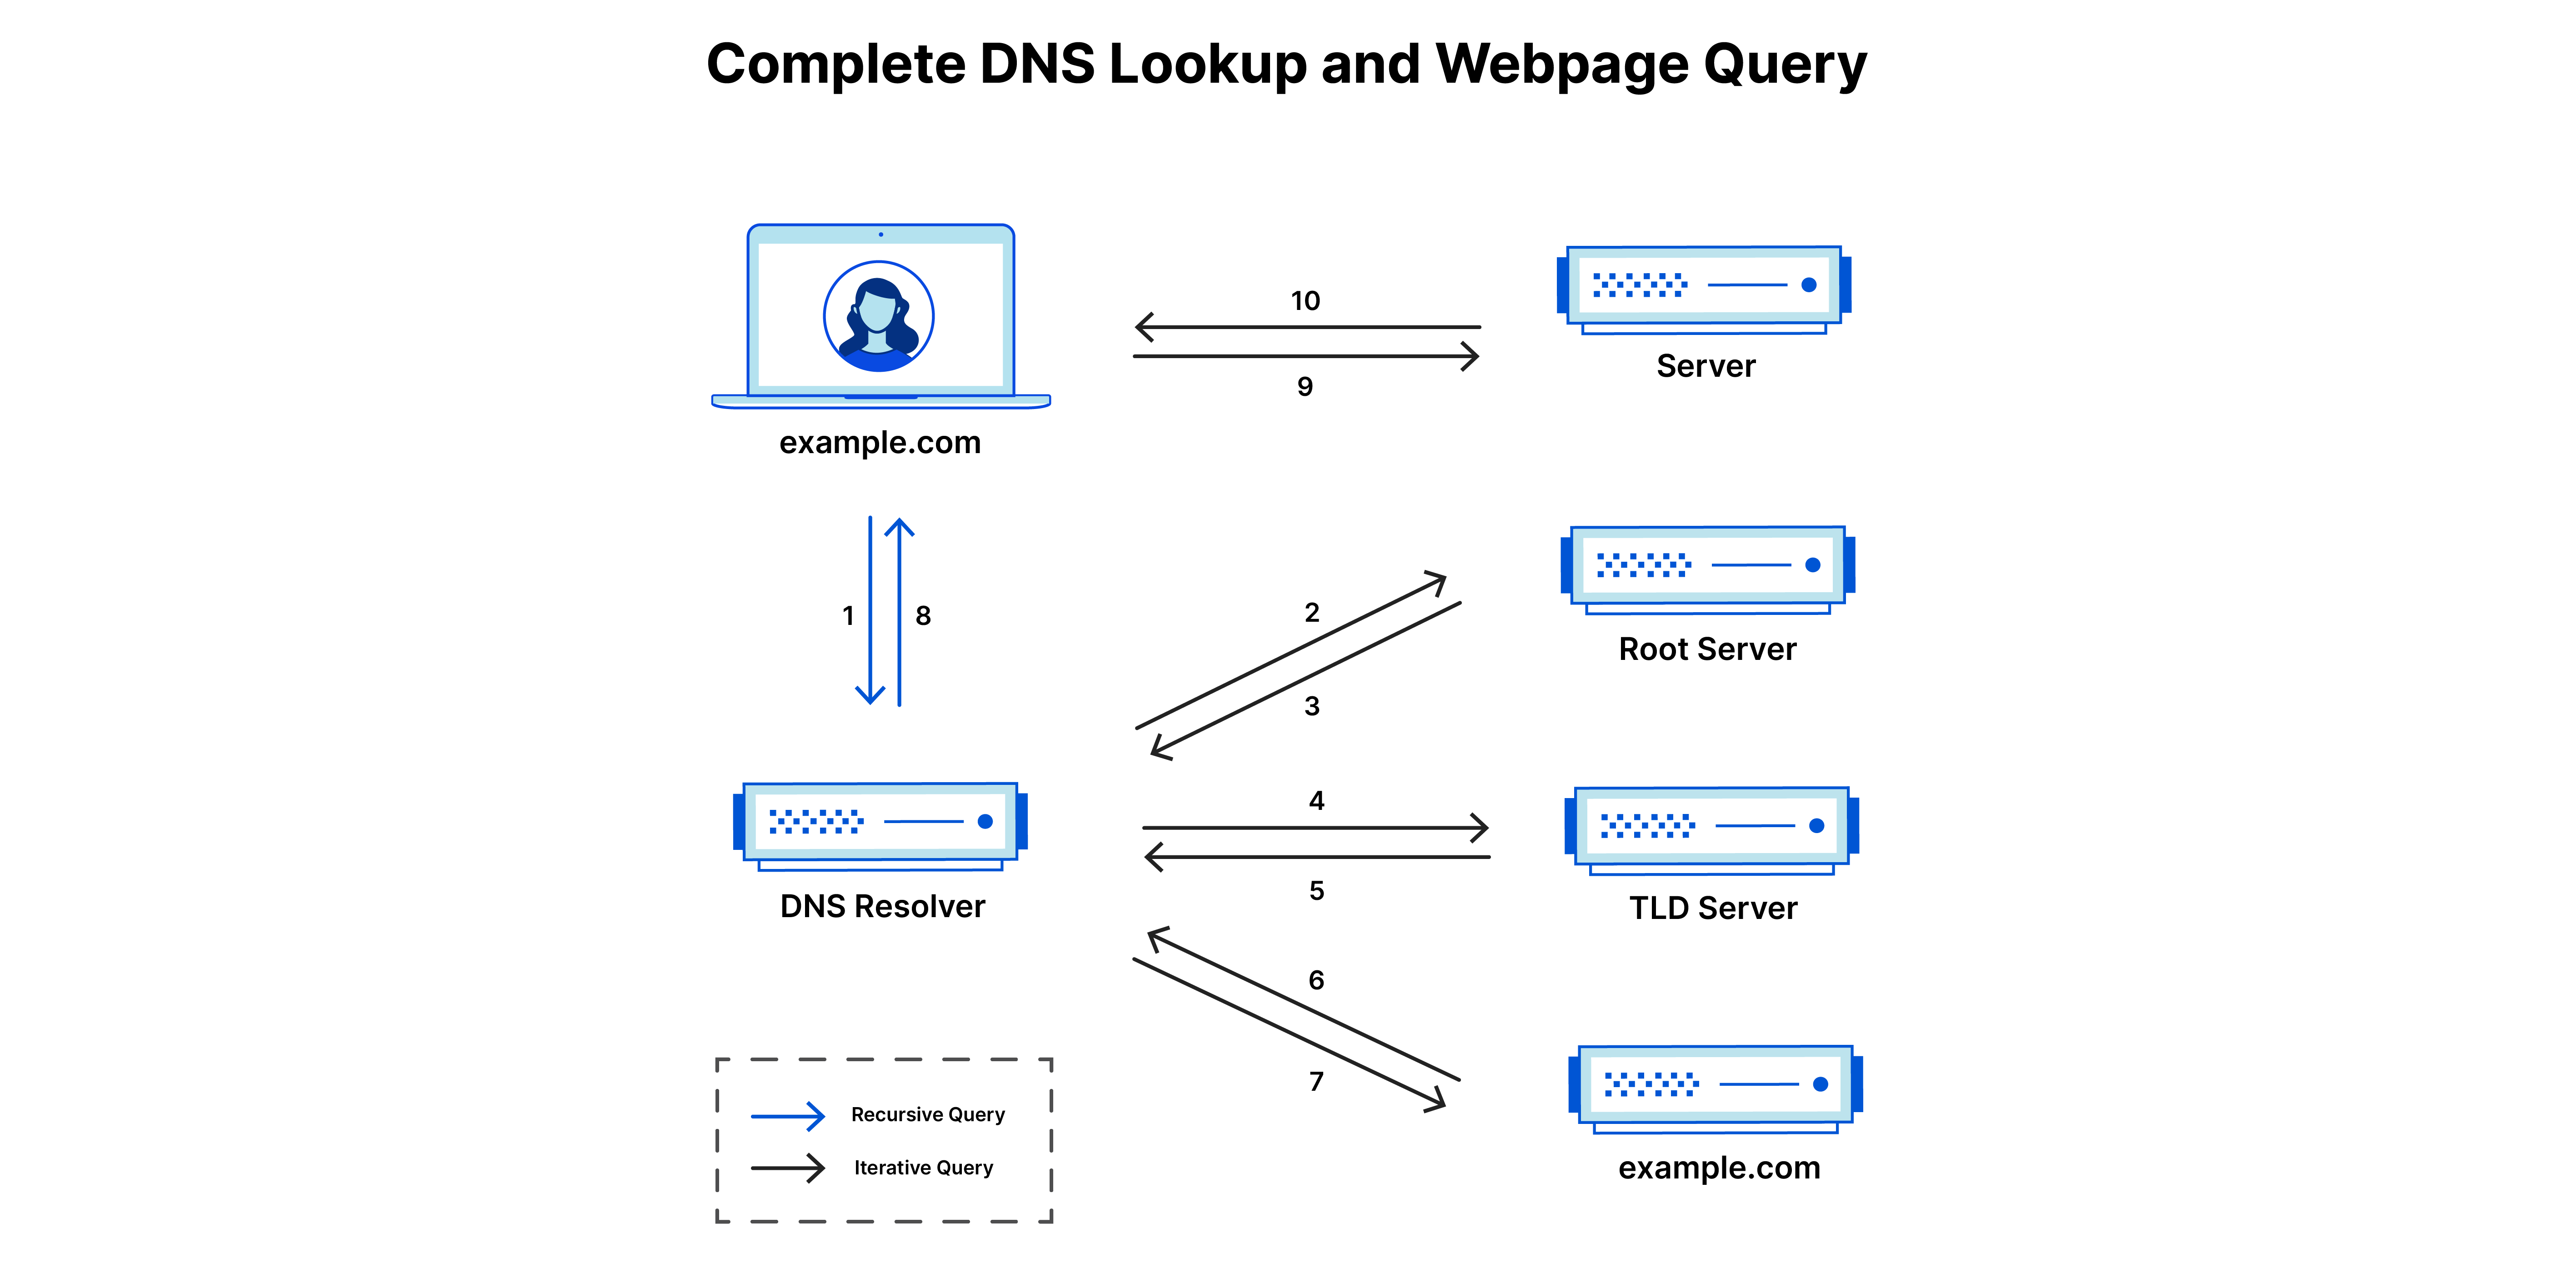 Consultation complète du DNS et interrogation de la page web - 10 étapes